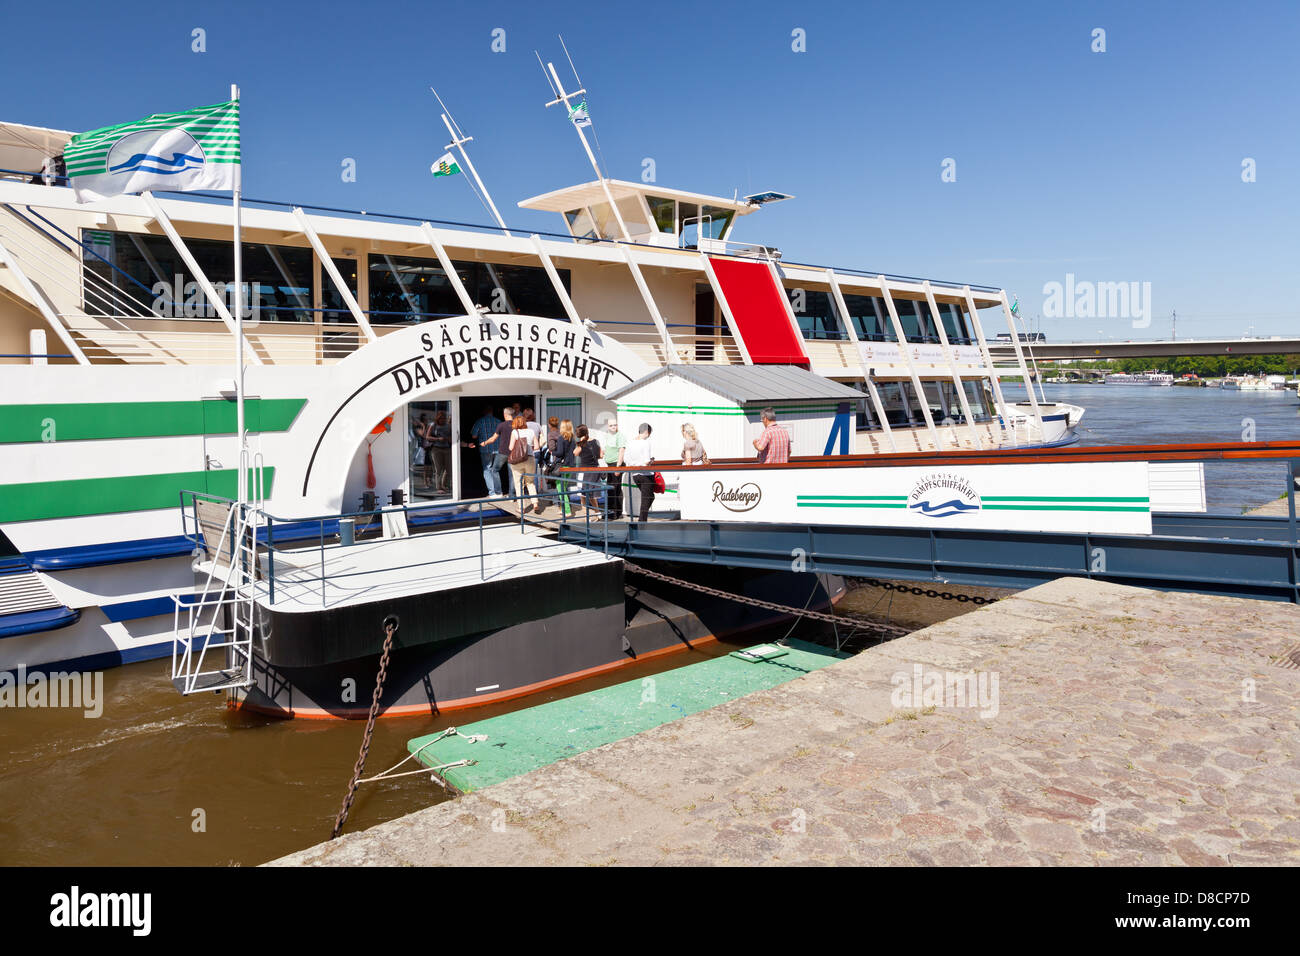 Dresde - embarcadère de bateaux de croisière de la rivière ; la Saxe, Allemagne, Europe Banque D'Images